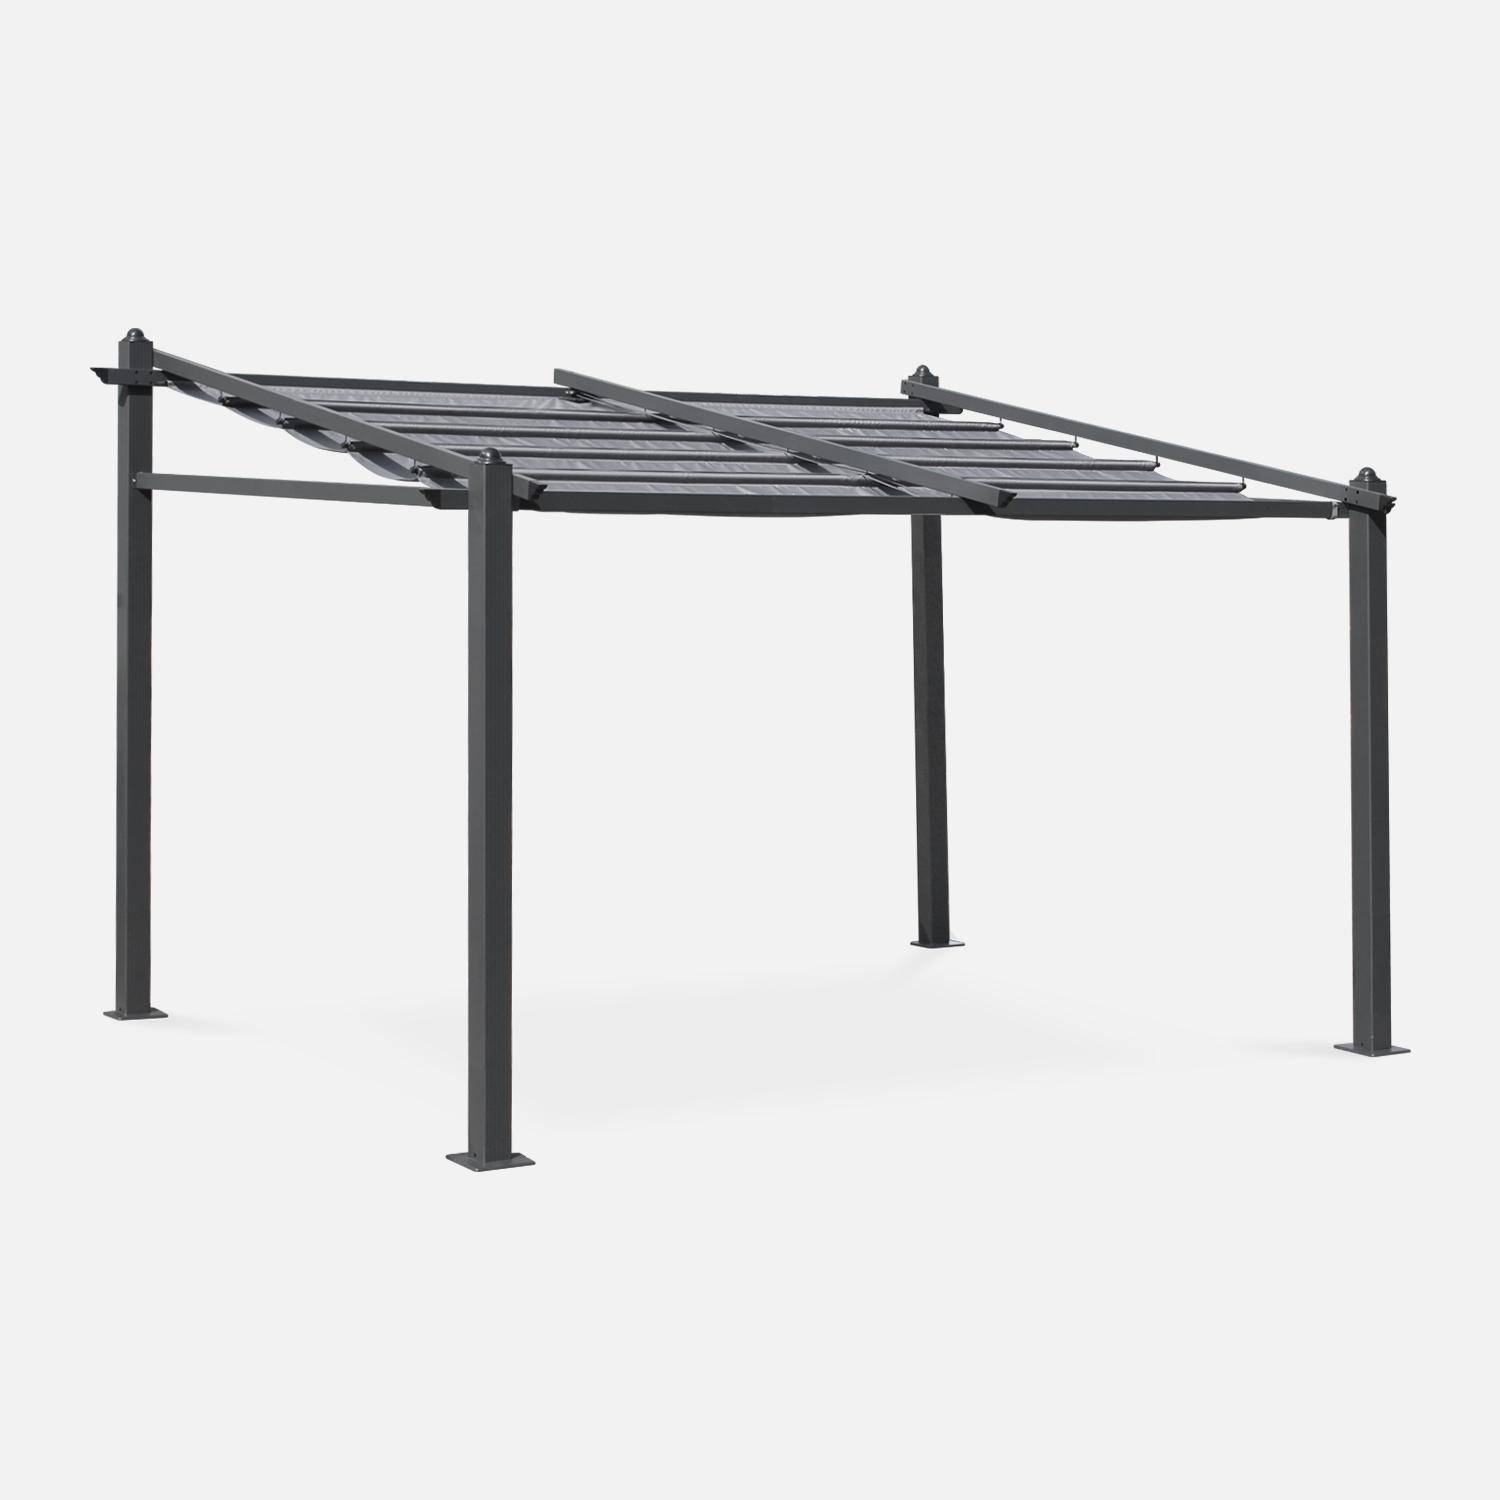 3x4m wall-mounted pergola in aluminium - Sliding retractable canopy, aluminium frame - Murum - Grey,sweeek,Photo1